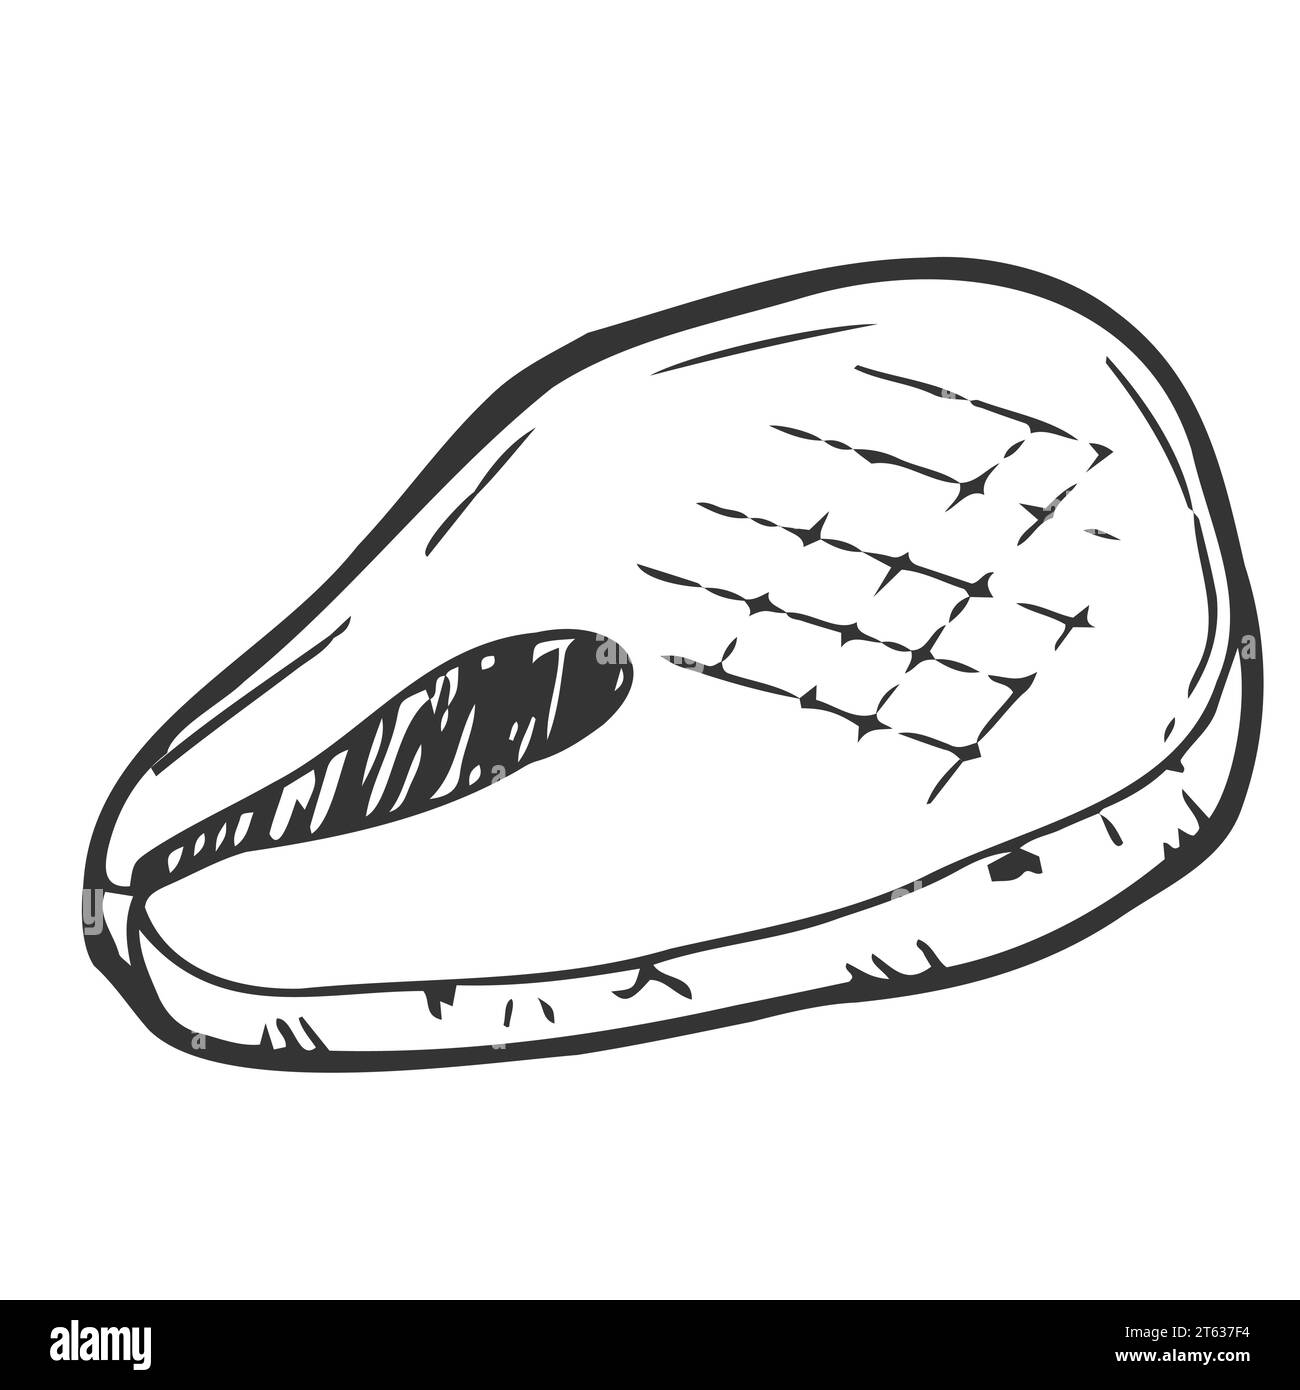 Bistecca di pesce disegnata a mano per grigliare o arrostire, disegno vettoriale isolato su sfondo bianco. Deliziosi piatti di pesce con incisioni. Illustrazione Vettoriale